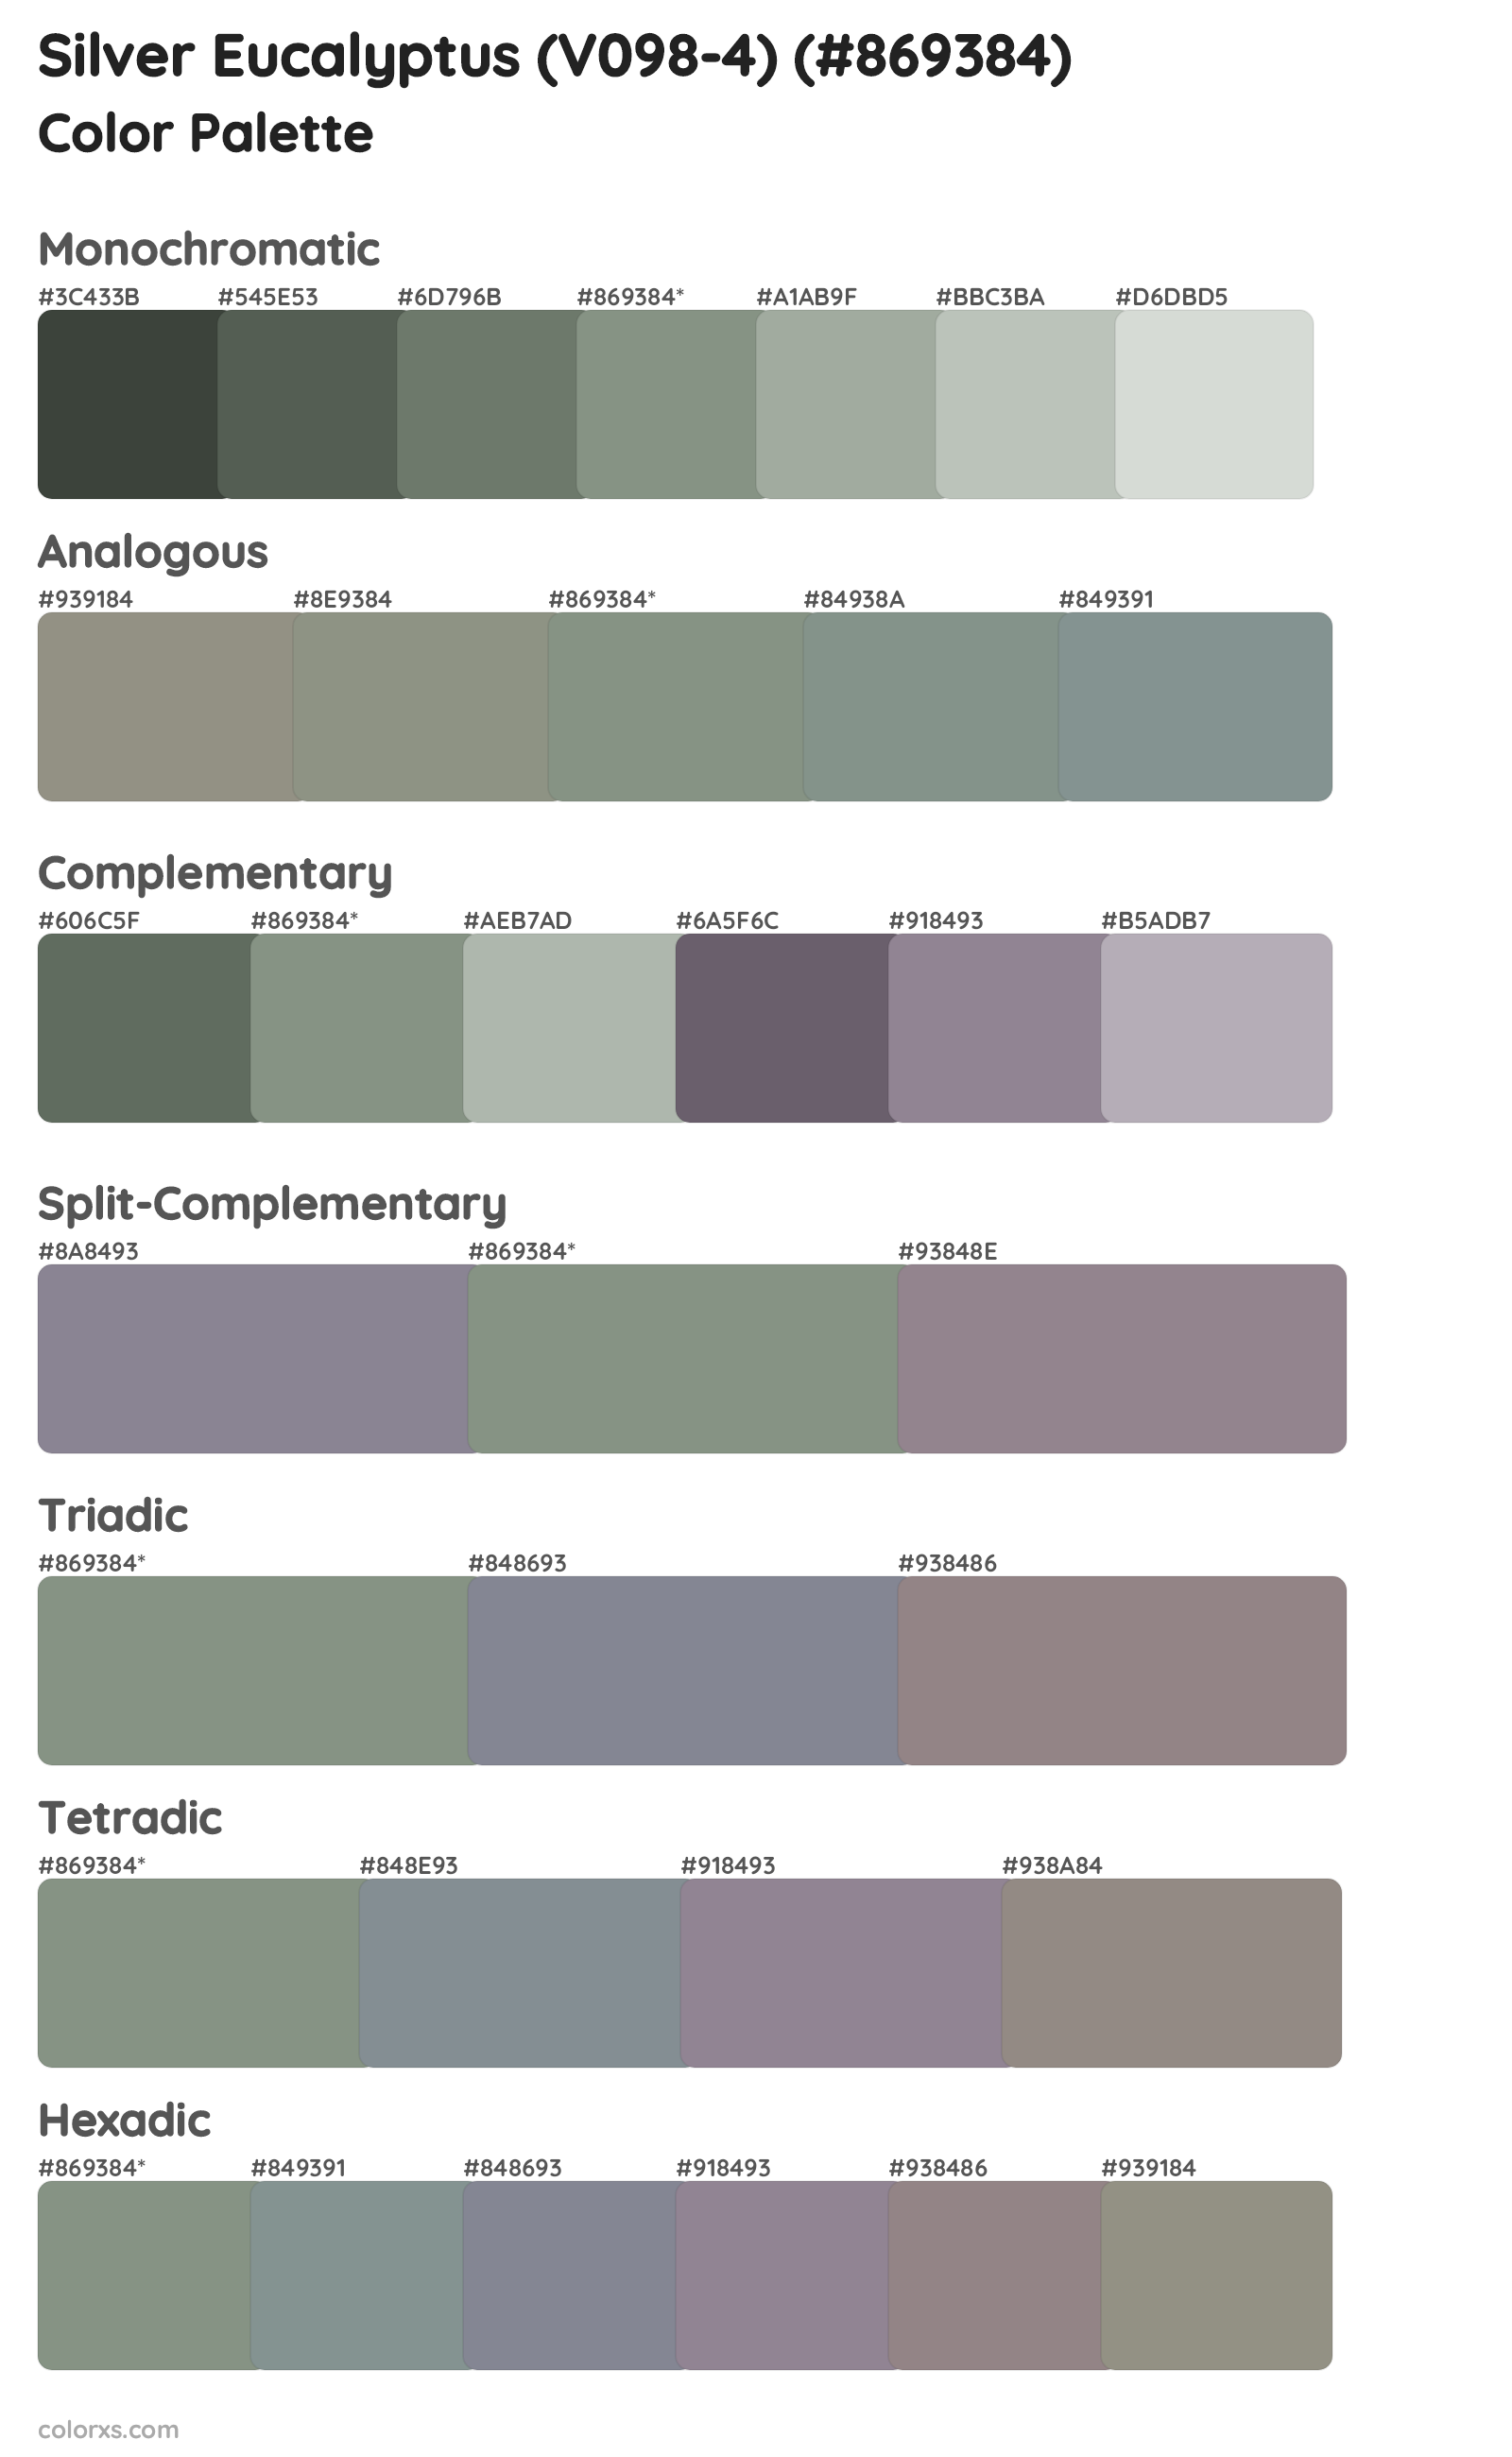 Silver Eucalyptus (V098-4) Color Scheme Palettes